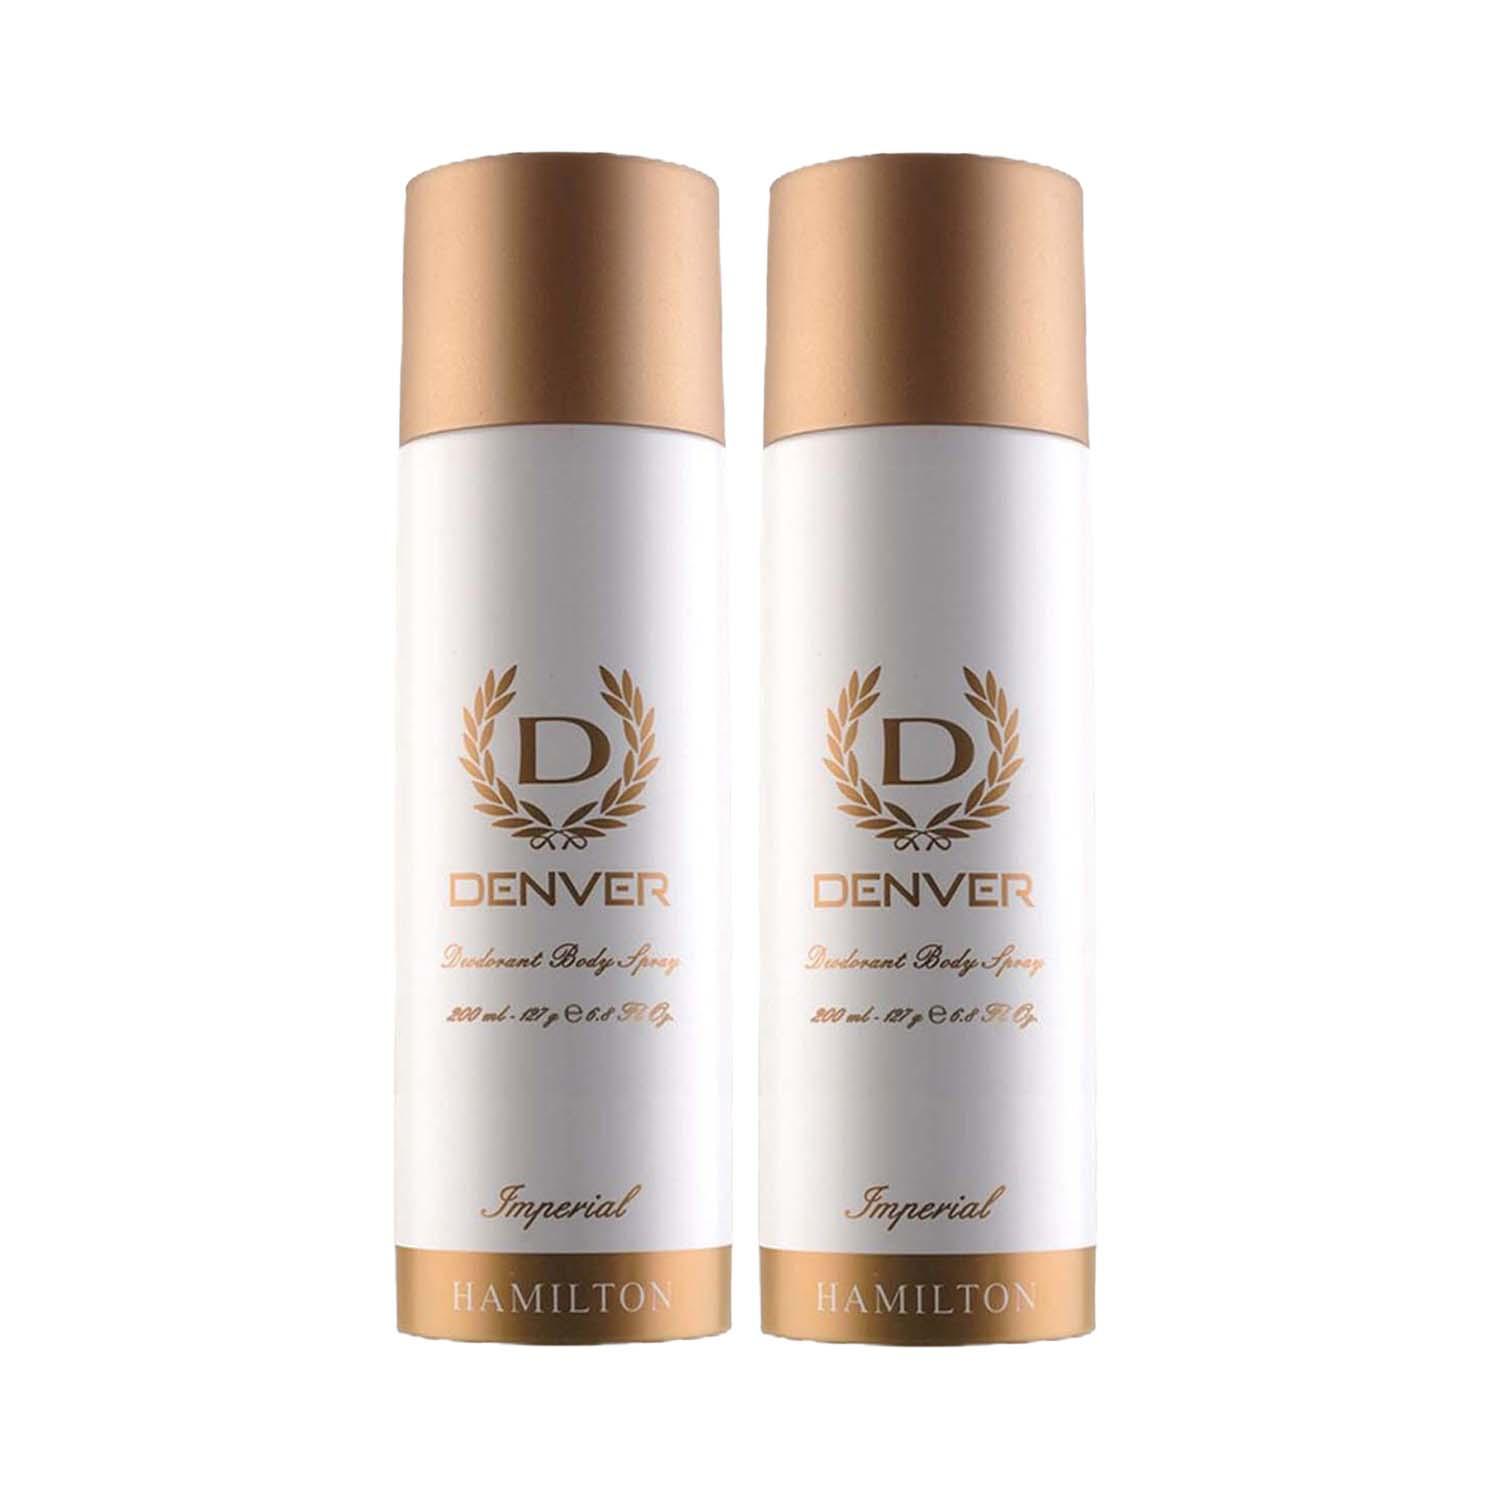 Denver | Denver Imperial Deodorant Body Spray for Men (Pack of 2) Combo